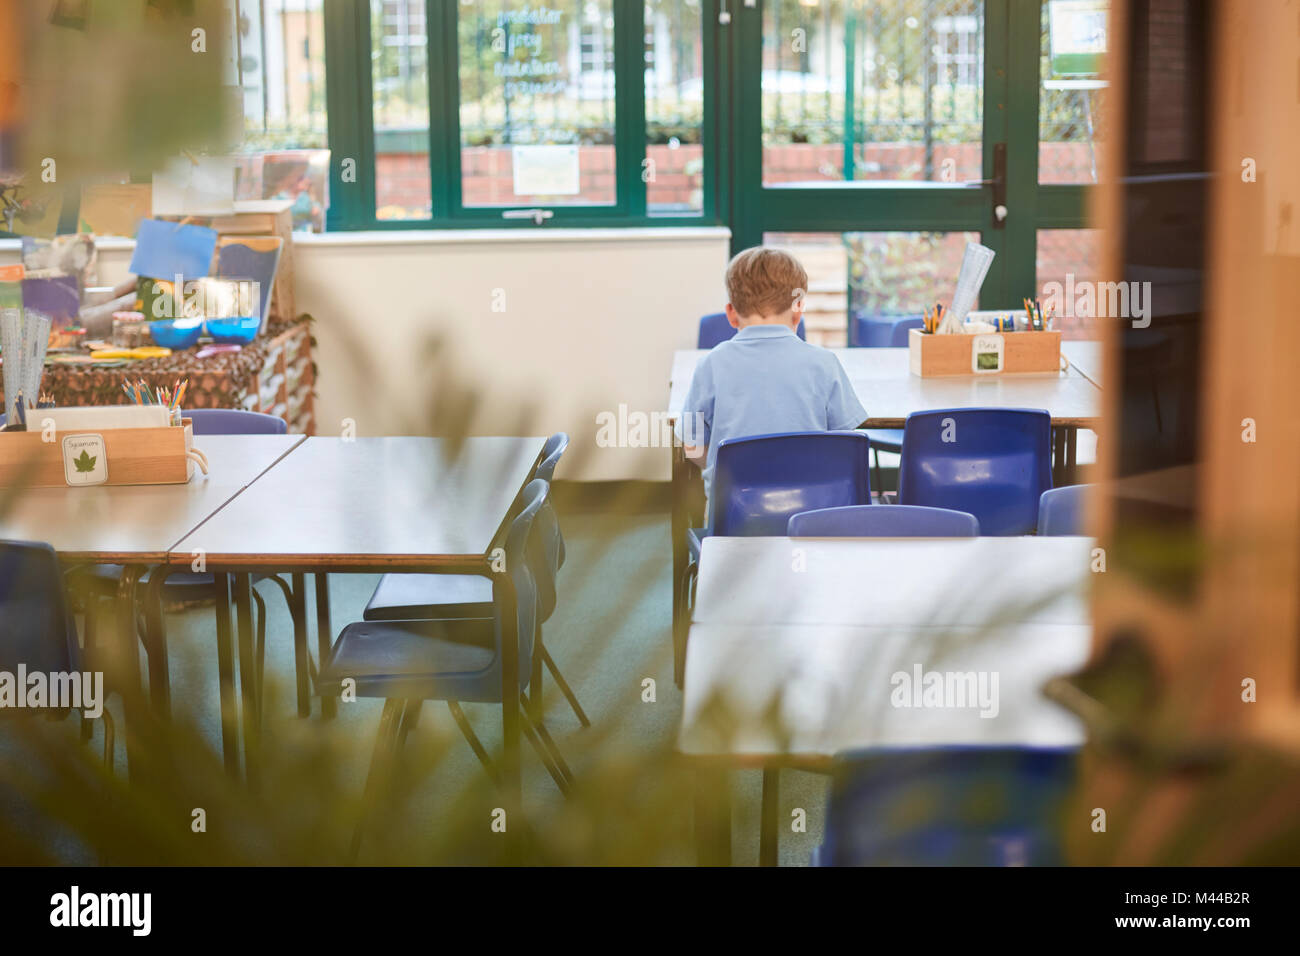 Scolaro seduto alla scrivania in aula presso la scuola primaria, vista posteriore Foto Stock